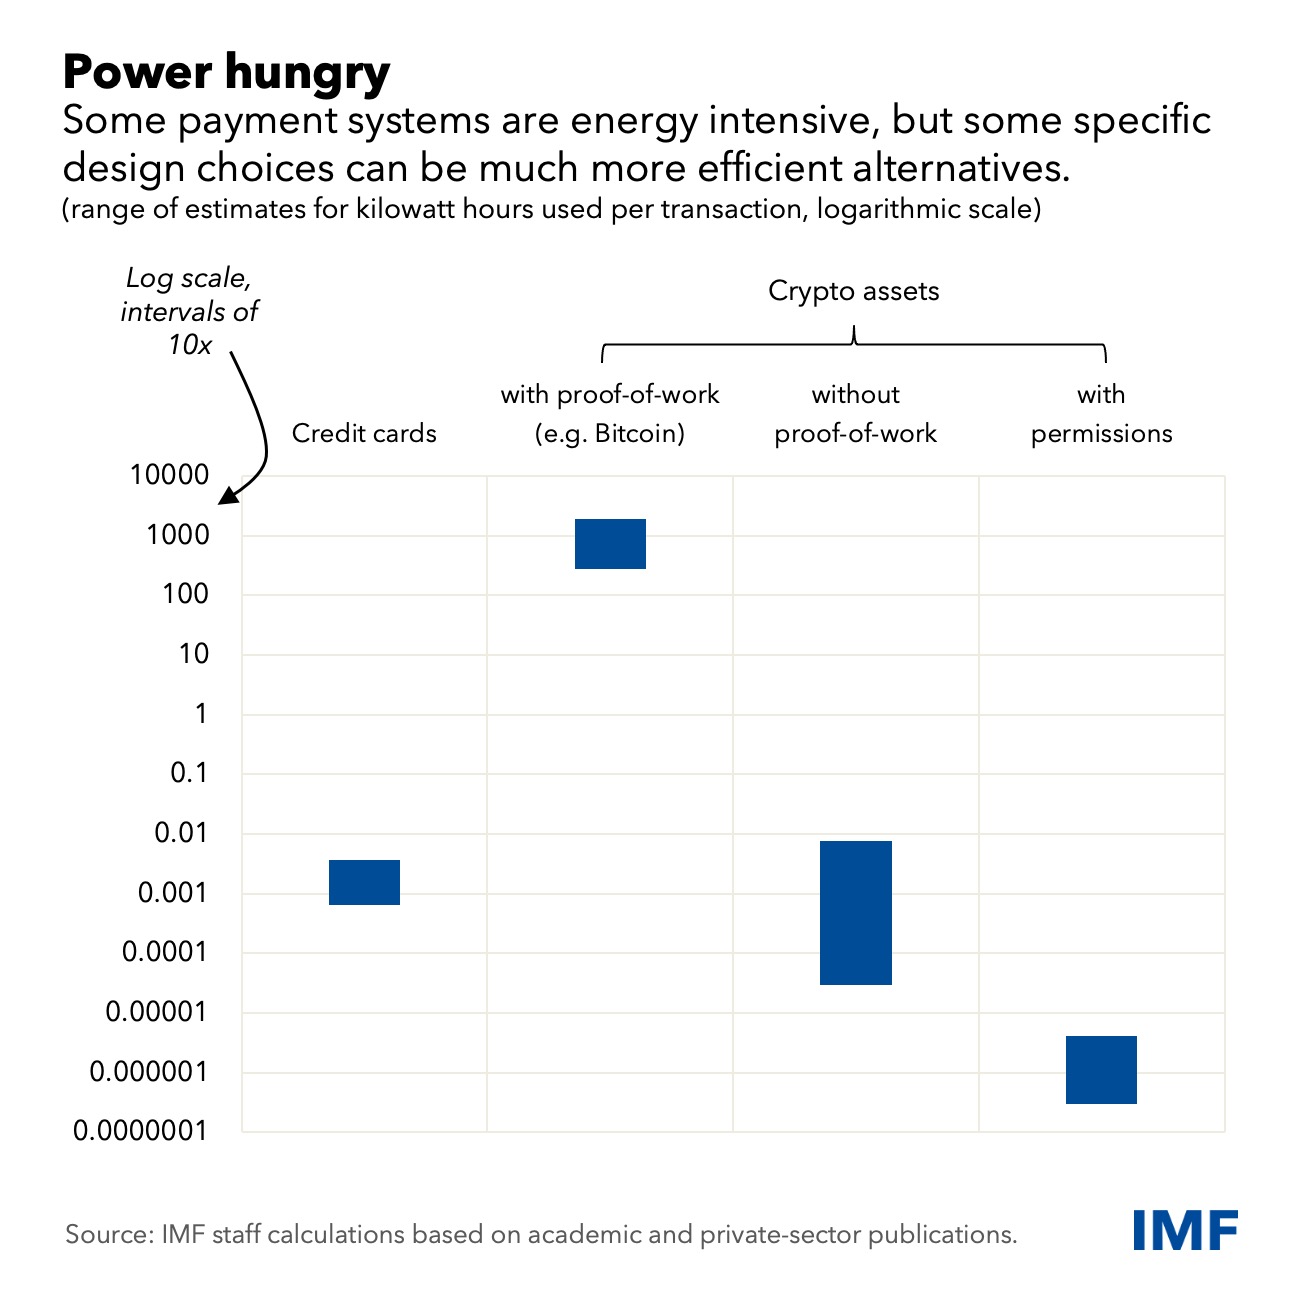 国际货币基金组织在其新报告中瞄准了比特币的能源使用